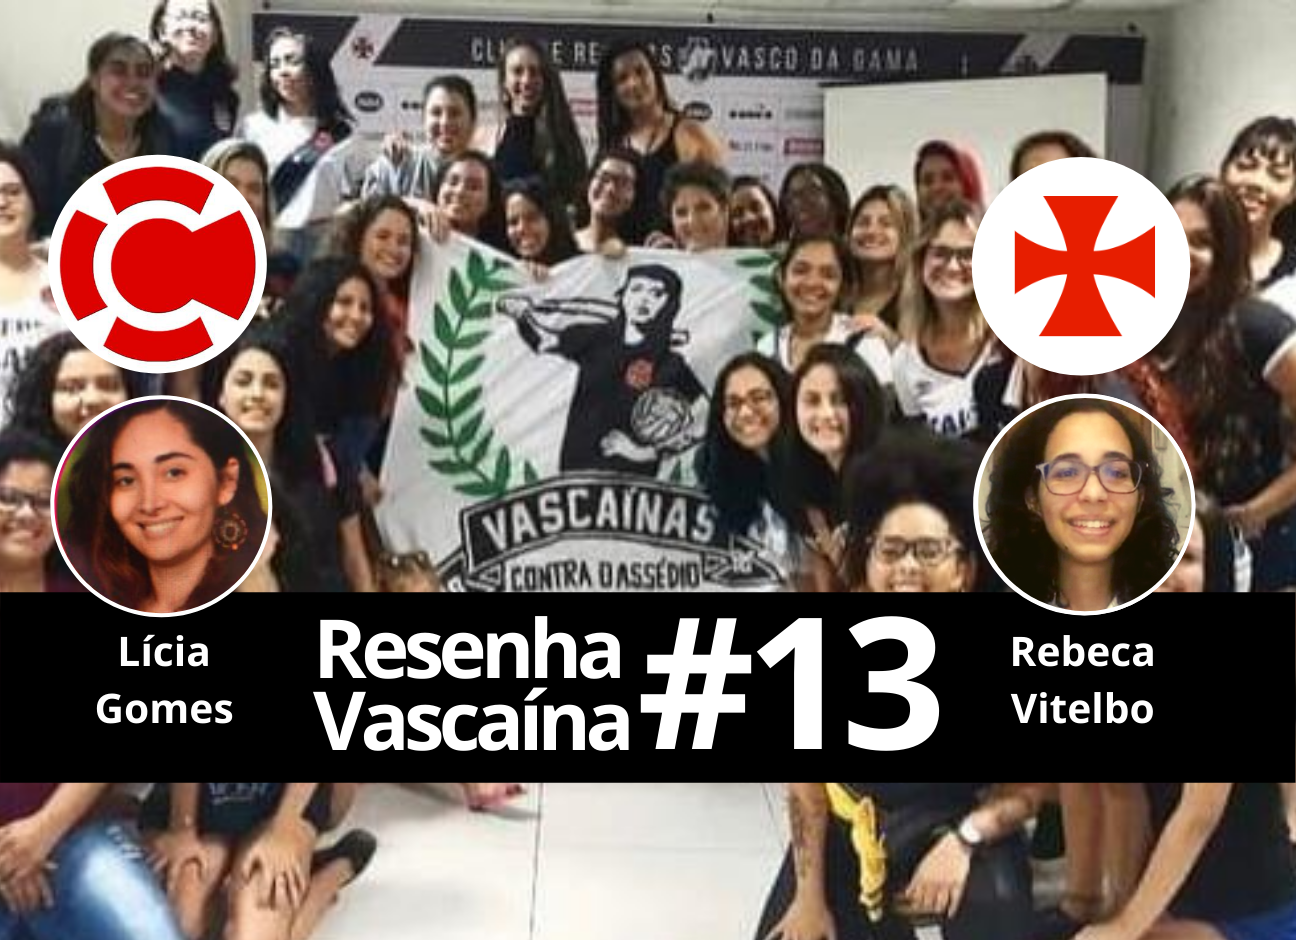 Resenha Vascaína #13 – REBECA VITELBO: “Sou vascaína por influência de uma torcedora botafoguense”